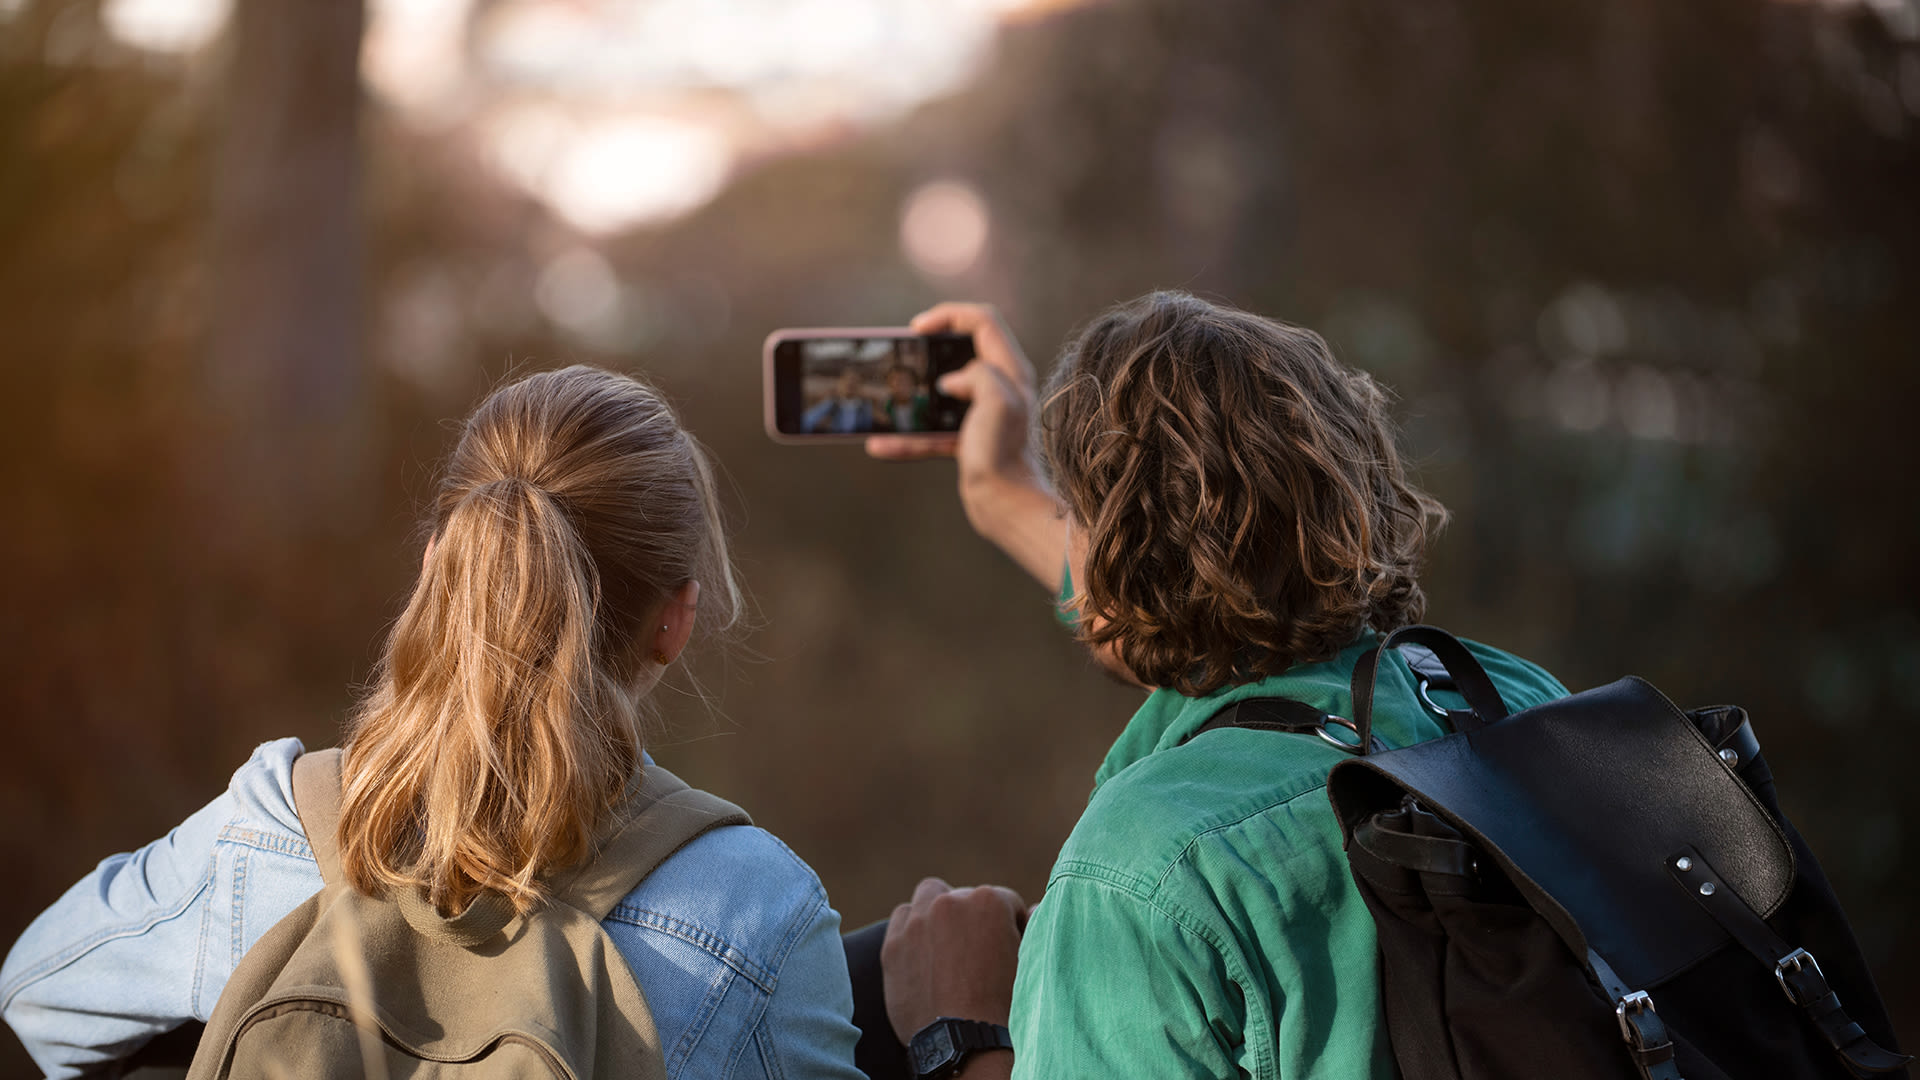 En tjej med långt hår och en kille i grön skjorta är ute i skogen. Han håller upp sin mobiltelefon för att ta ett kort. 